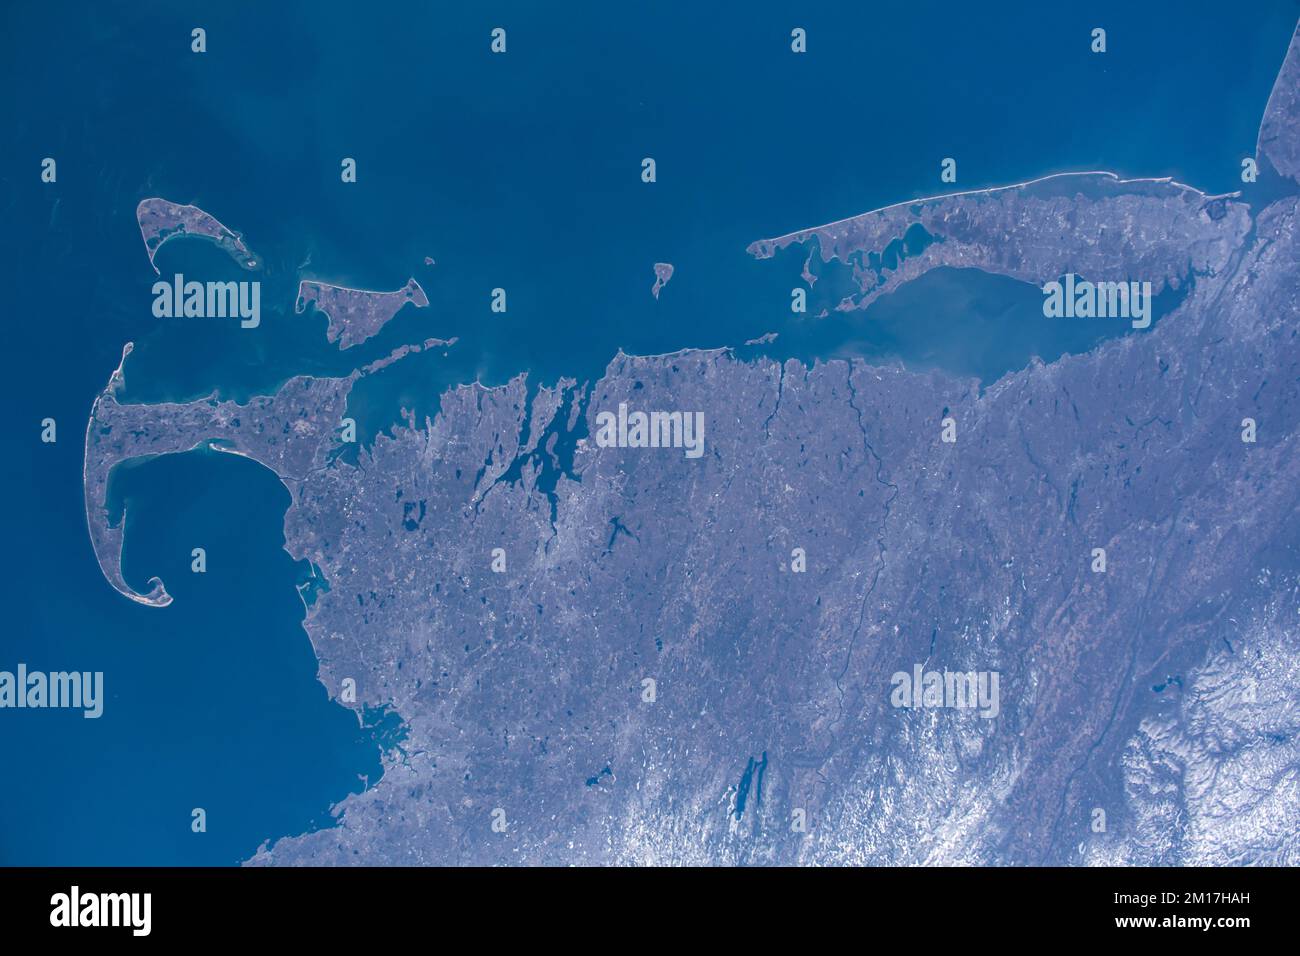 Vue aérienne de Cape Cod, Massachusetts et long Island, New York depuis l'espace. Amélioration numérique. Éléments de cette image fournis par la NASA. Banque D'Images